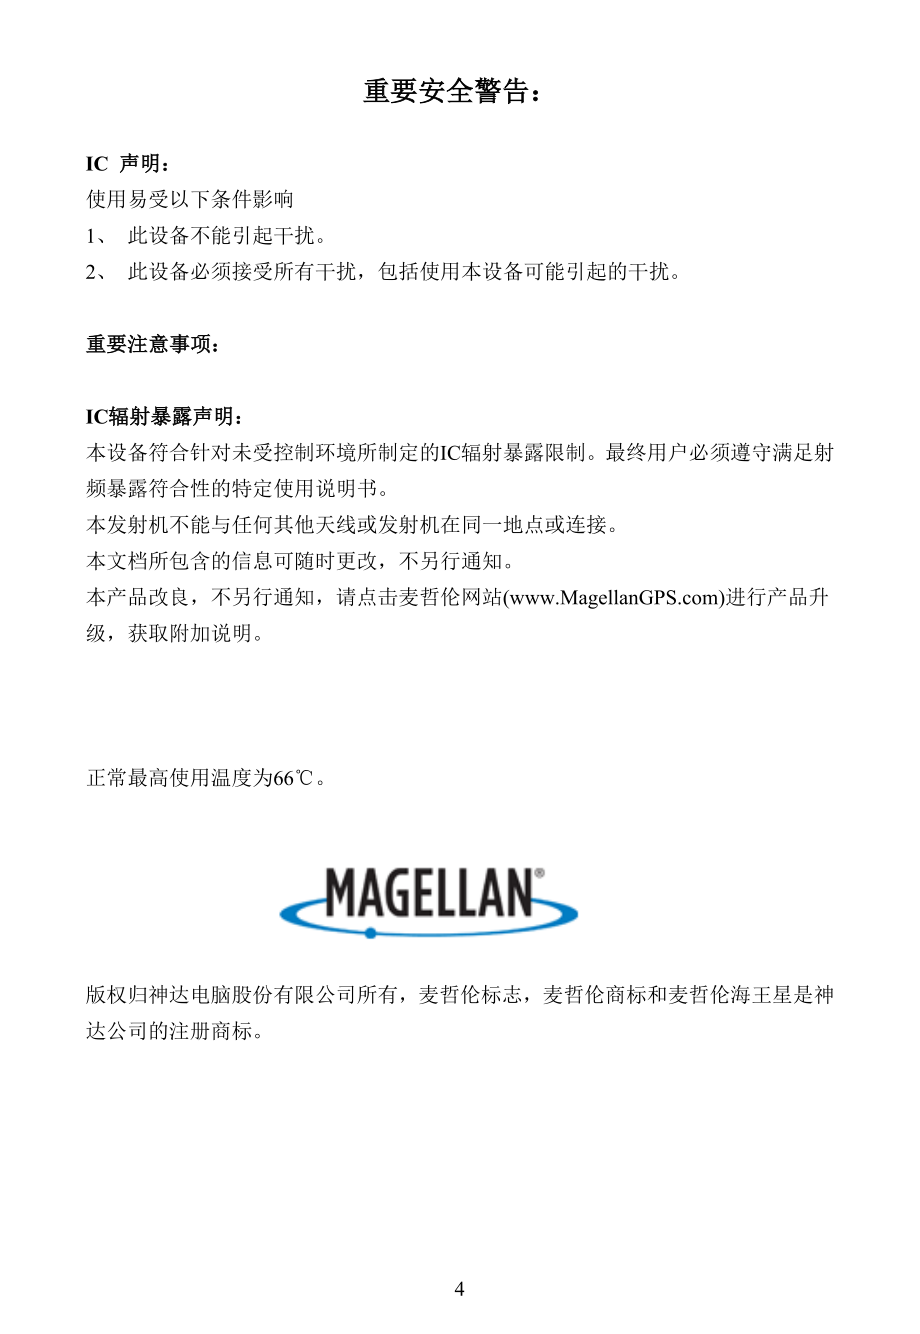 海王星系列GPS手持机中文使用说明_第4页